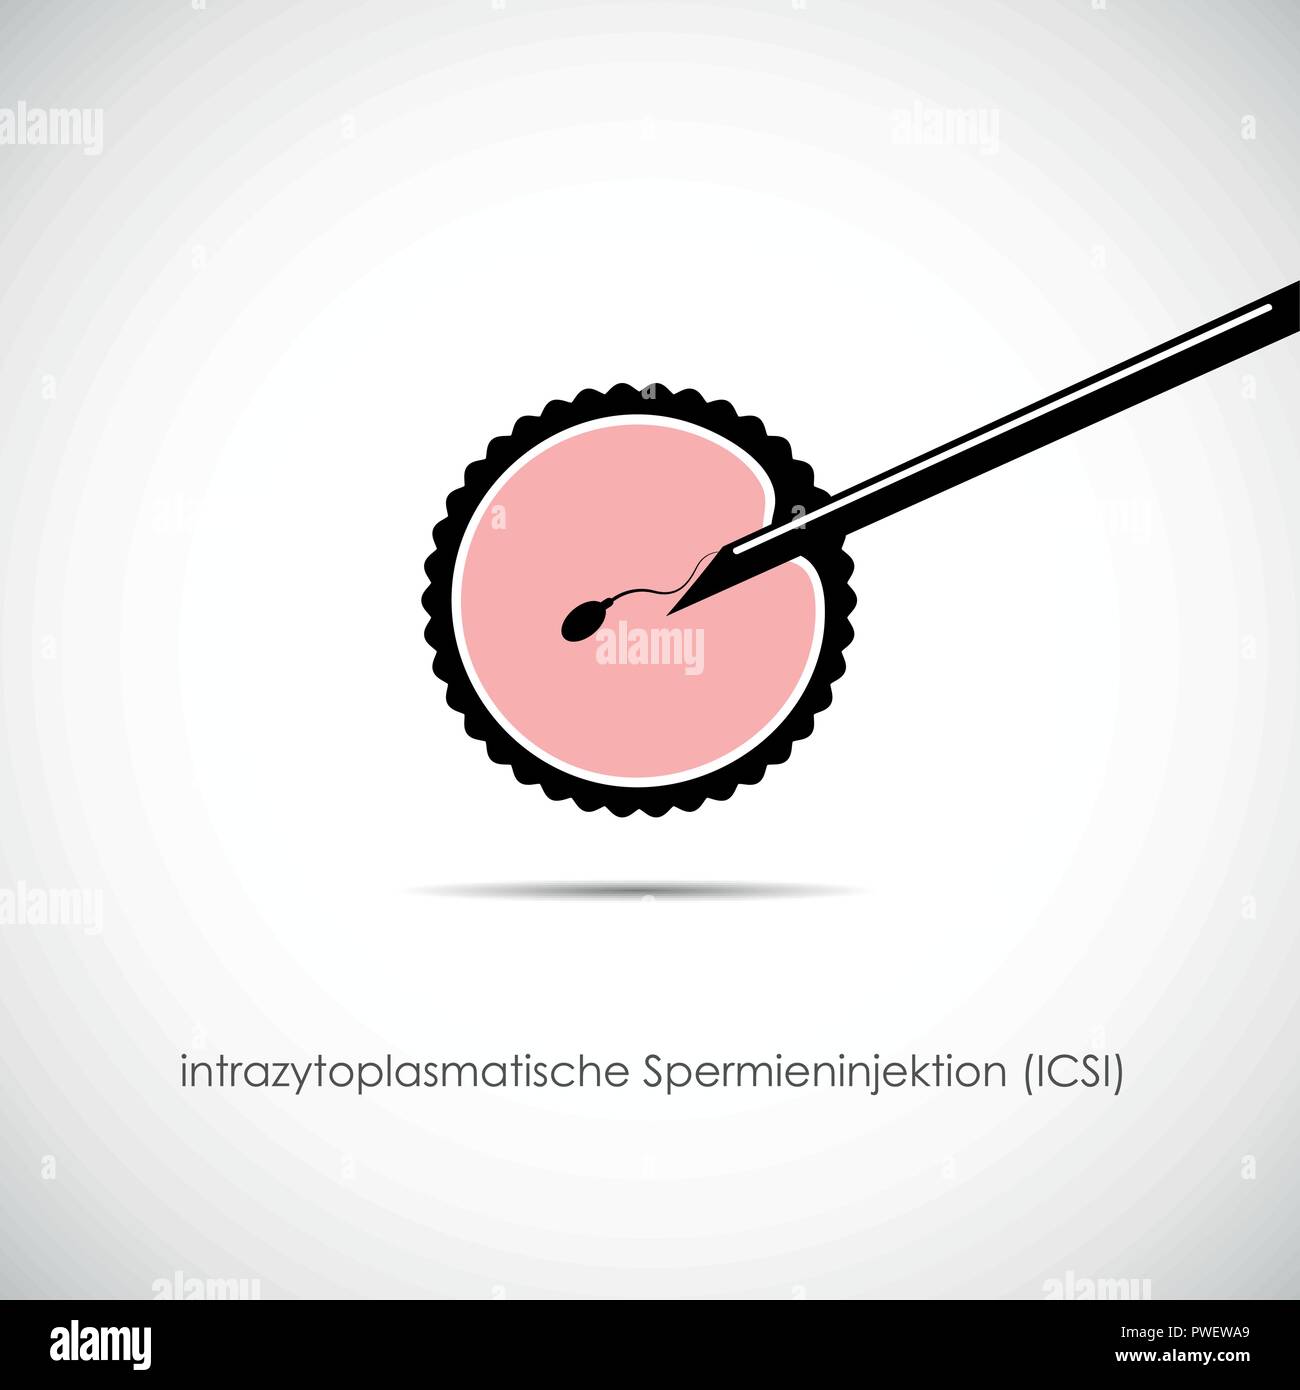 La reproduction de la fertilité de l'ovule et spermatozoïde ICSI vector illustration EPS10 Illustration de Vecteur